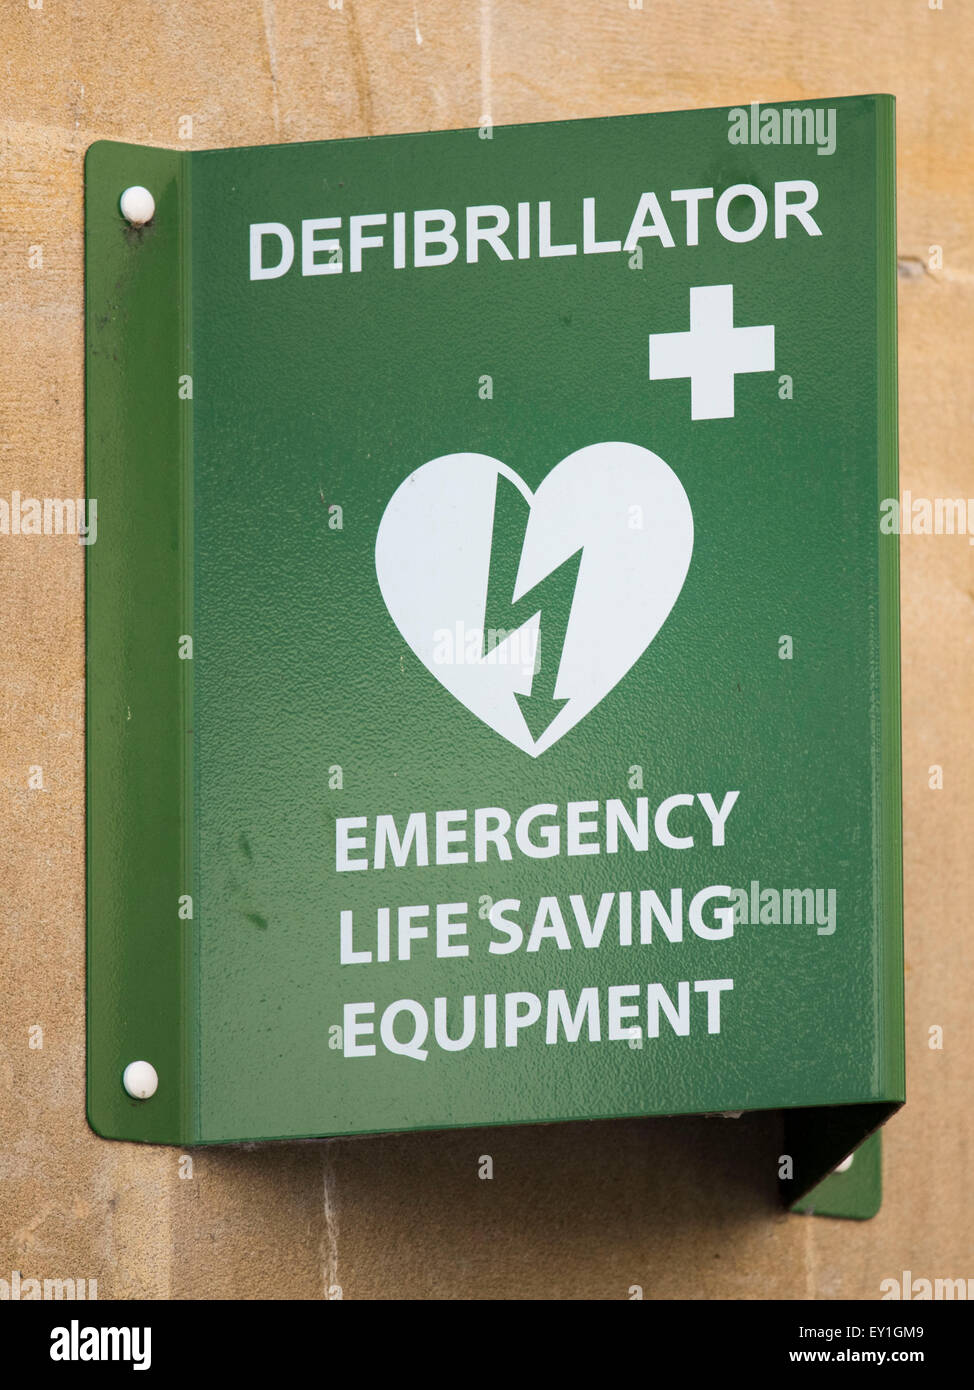 Ein Defibrillator-Zeichen. Defibrillatoren werden verwendet, um einen unregelmäßigen Herzschlag zu stabilisieren. und finden sich oft in den öffentlichen Bereichen. Stockfoto